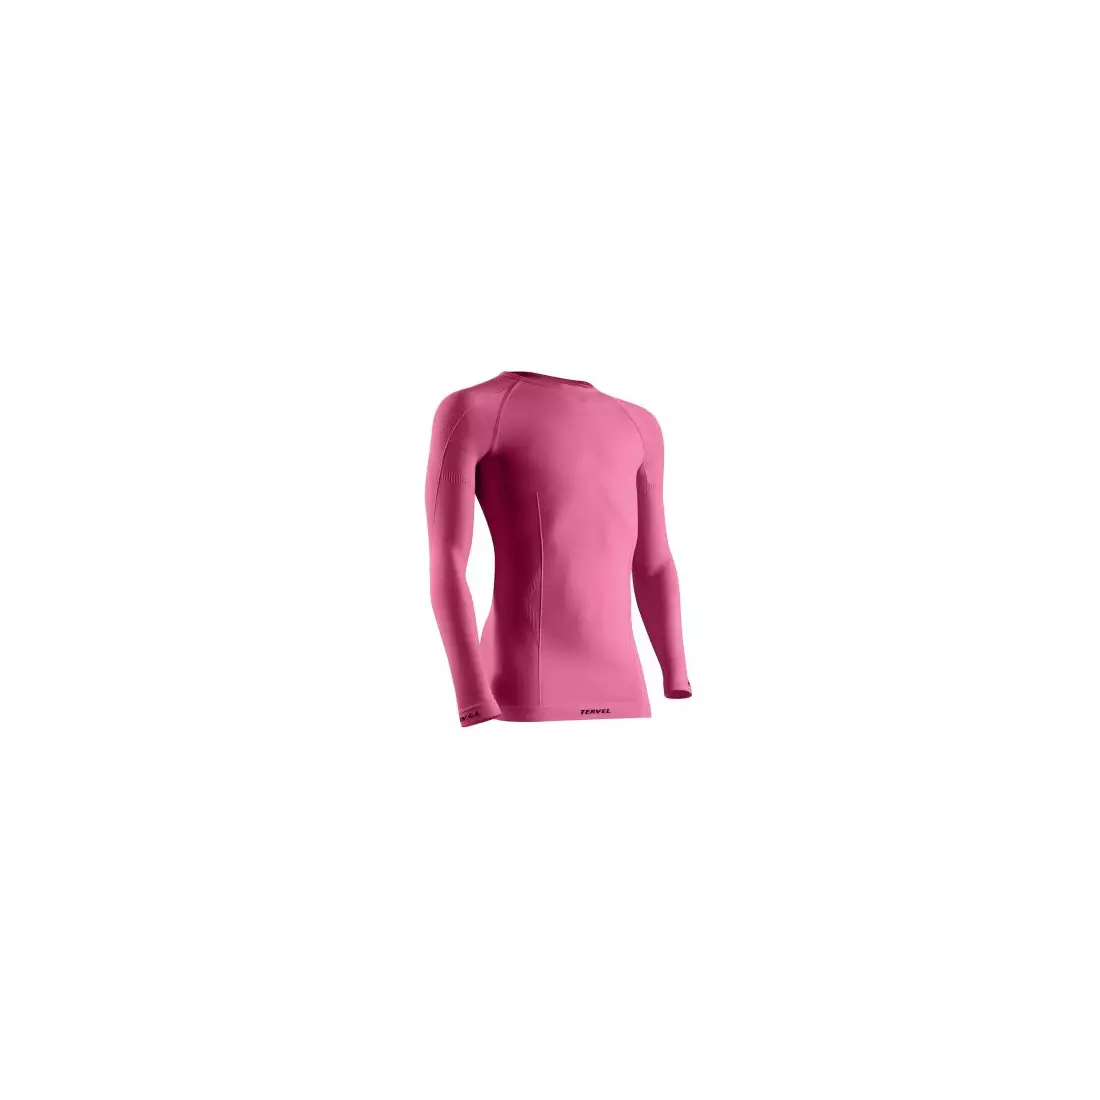 TERVEL - COMFORTLINE JUNIOR - D/R T-shirt, color: Pink